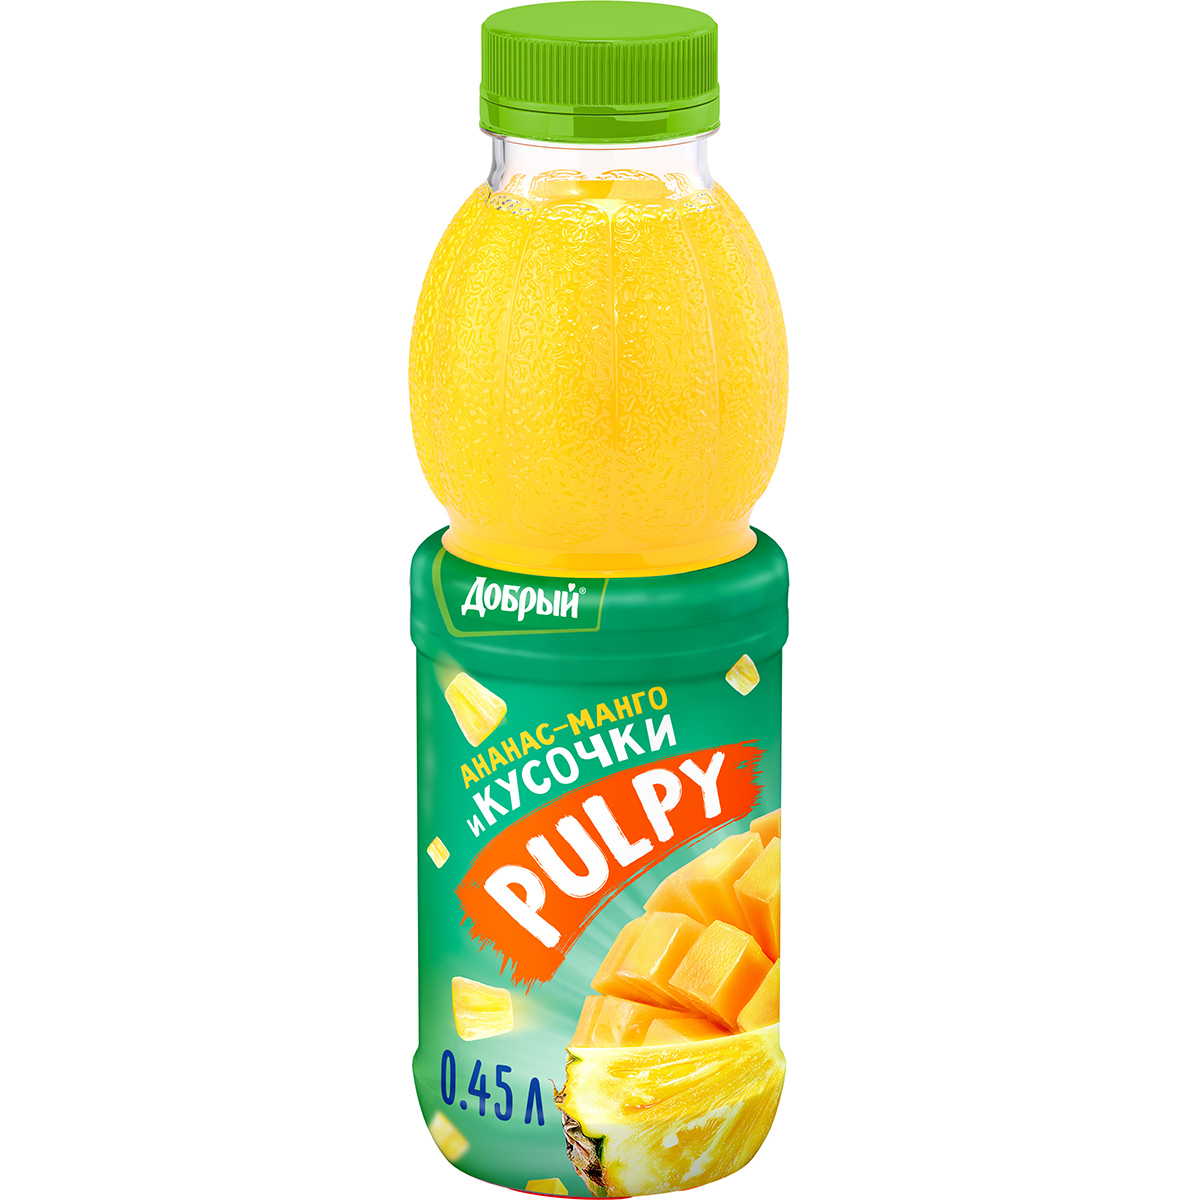 Напиток сокосодержащий Добрый Pulpy Ананас-манго 450 мл напиток сокосодержащий добрый pulpy с клубникой арбузом и алое 450 мл